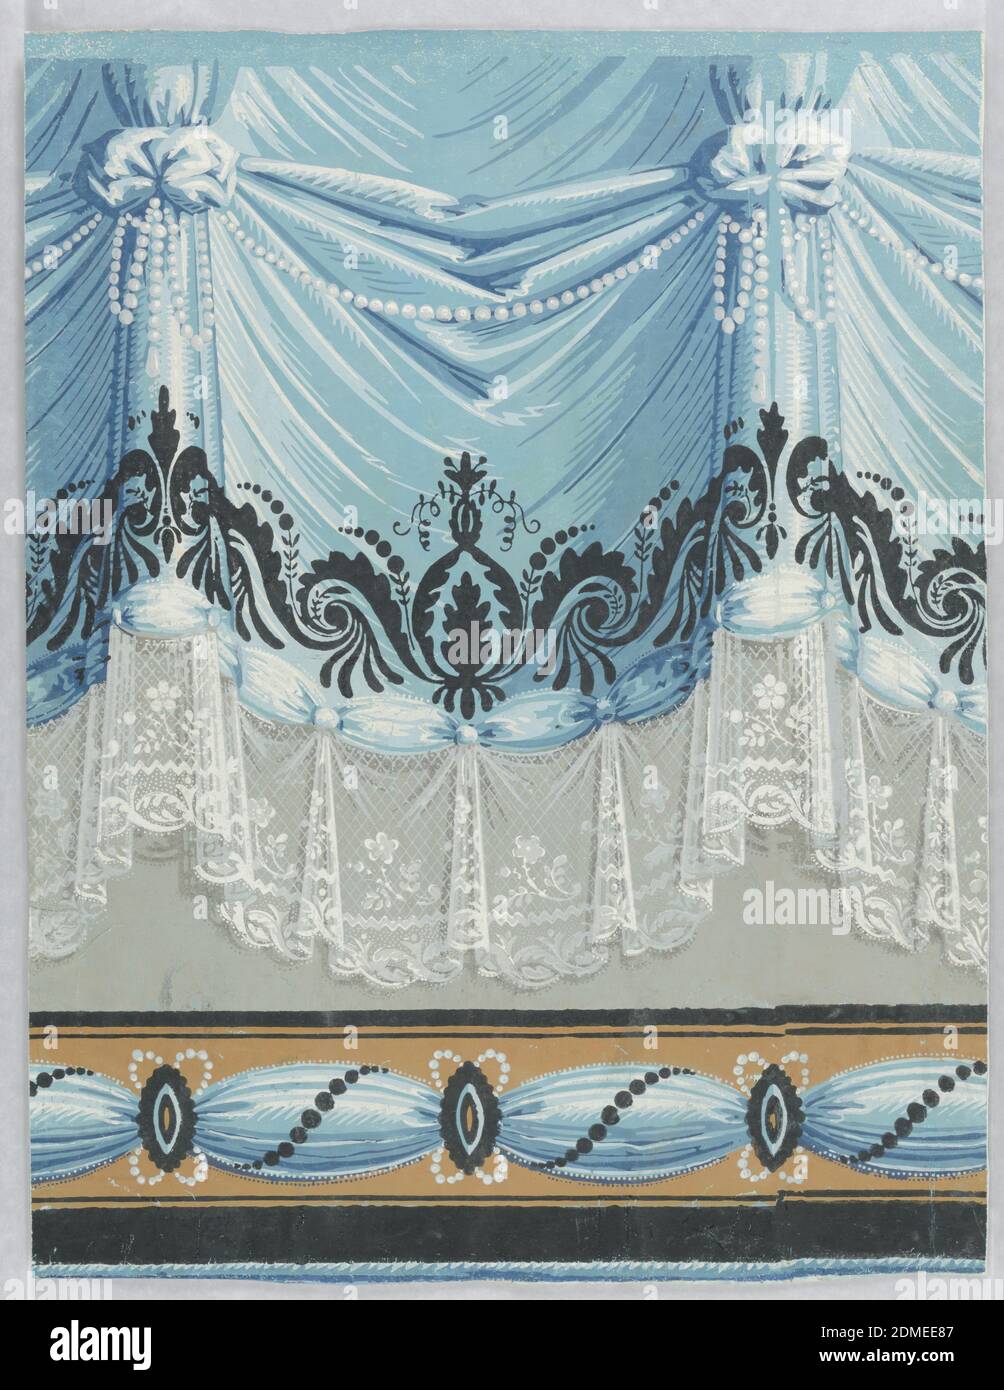 Bordüre, Block gedruckt auf handgefertigtem Papier, geraffte blaue Vorhänge mit Spitzenkante in Weiß. Blaues Band mit Medaillons entlang der unteren Kante gefangen; war wahrscheinlich dazu gedacht, ausgeschnitten werden, um als Stuhlschiene zu verwenden. Beide Motive sind mit weißen Perlen und schwarzem Scroll- und Perlendesign verziert., Frankreich, 1805–1815, Wandverkleidungen, Bordüre Stockfoto